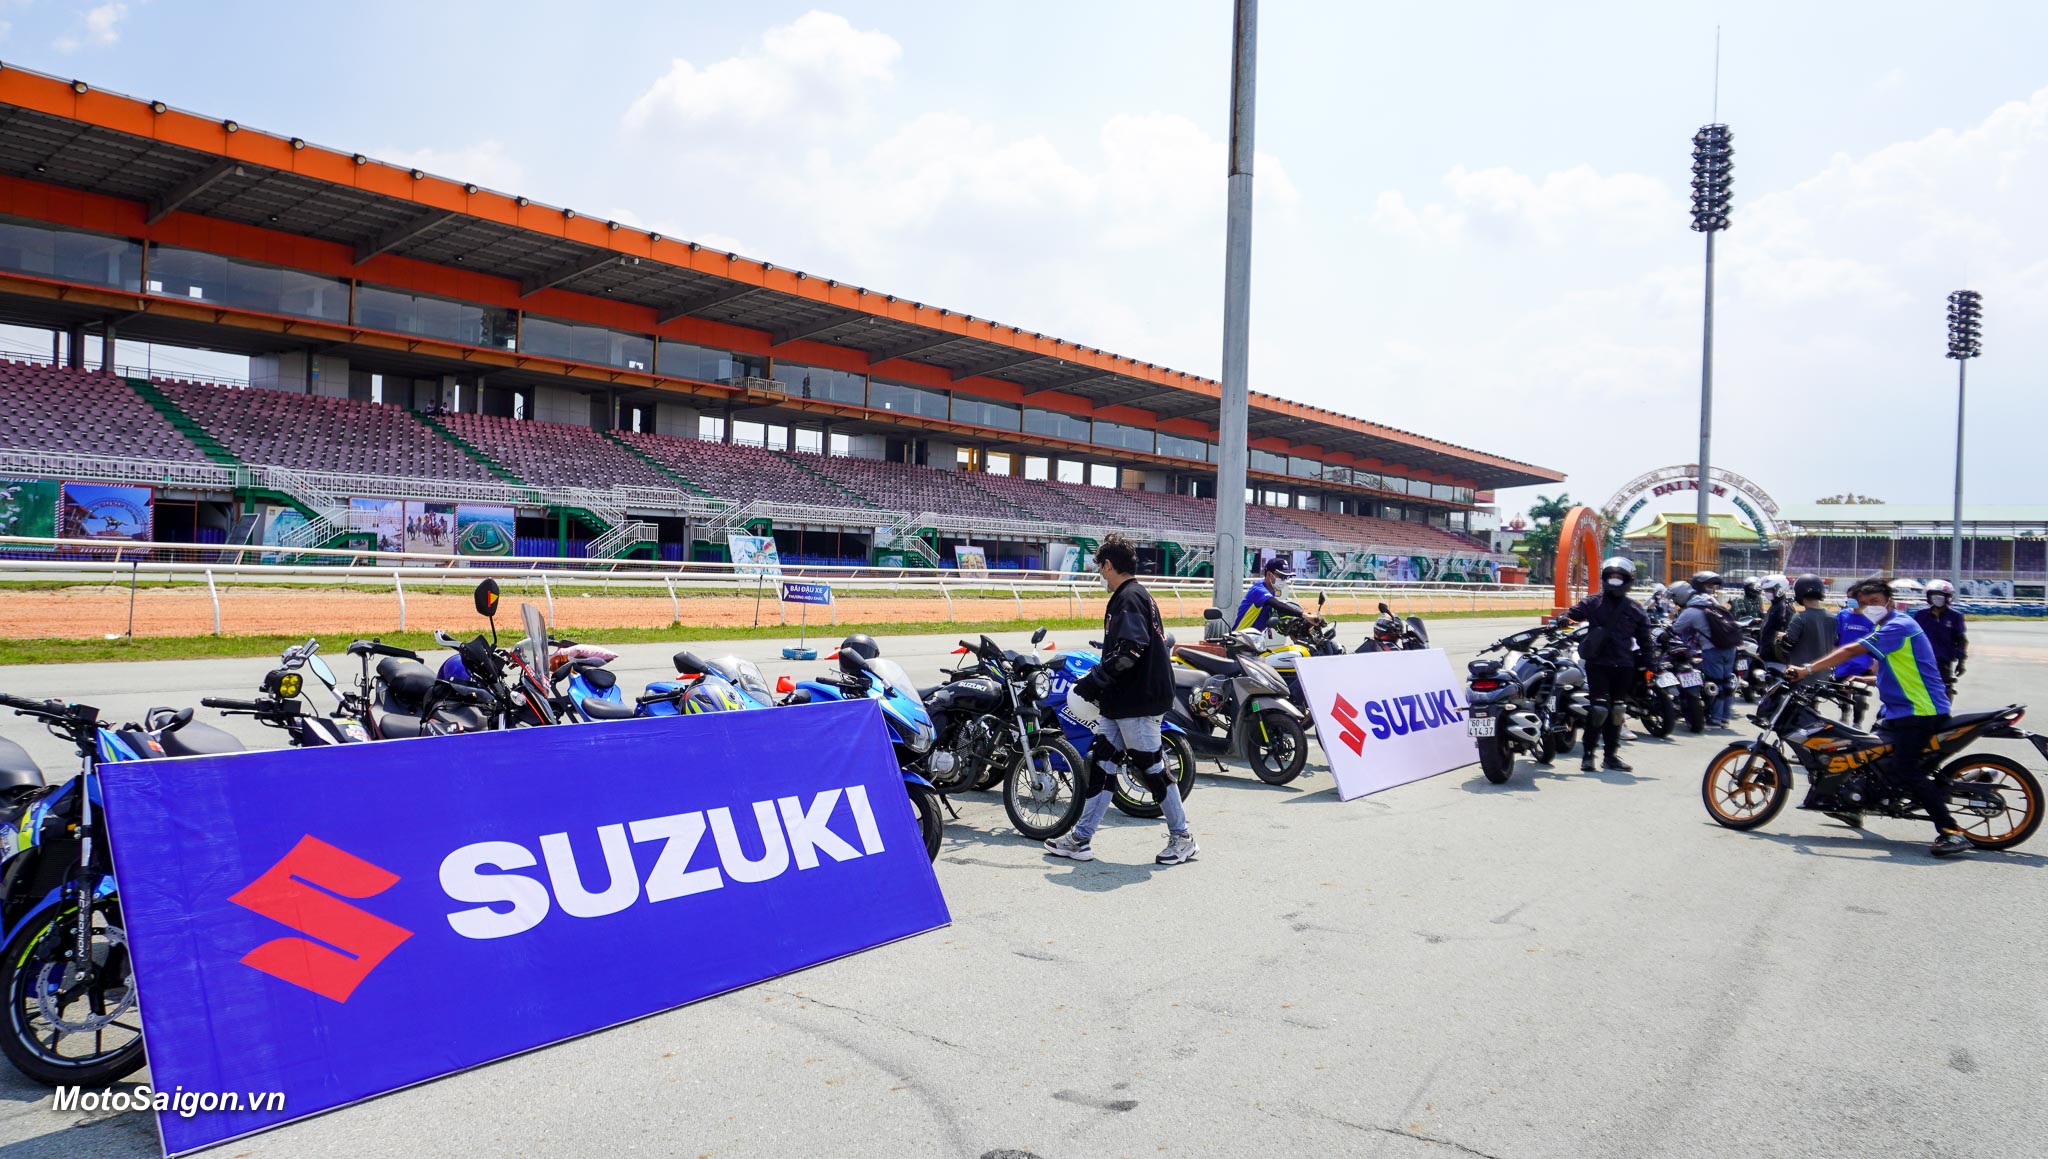 Đại hội Suzuki 2022 - Thu hút đông đảo bikers với nhiều hoạt động hấp dẫn